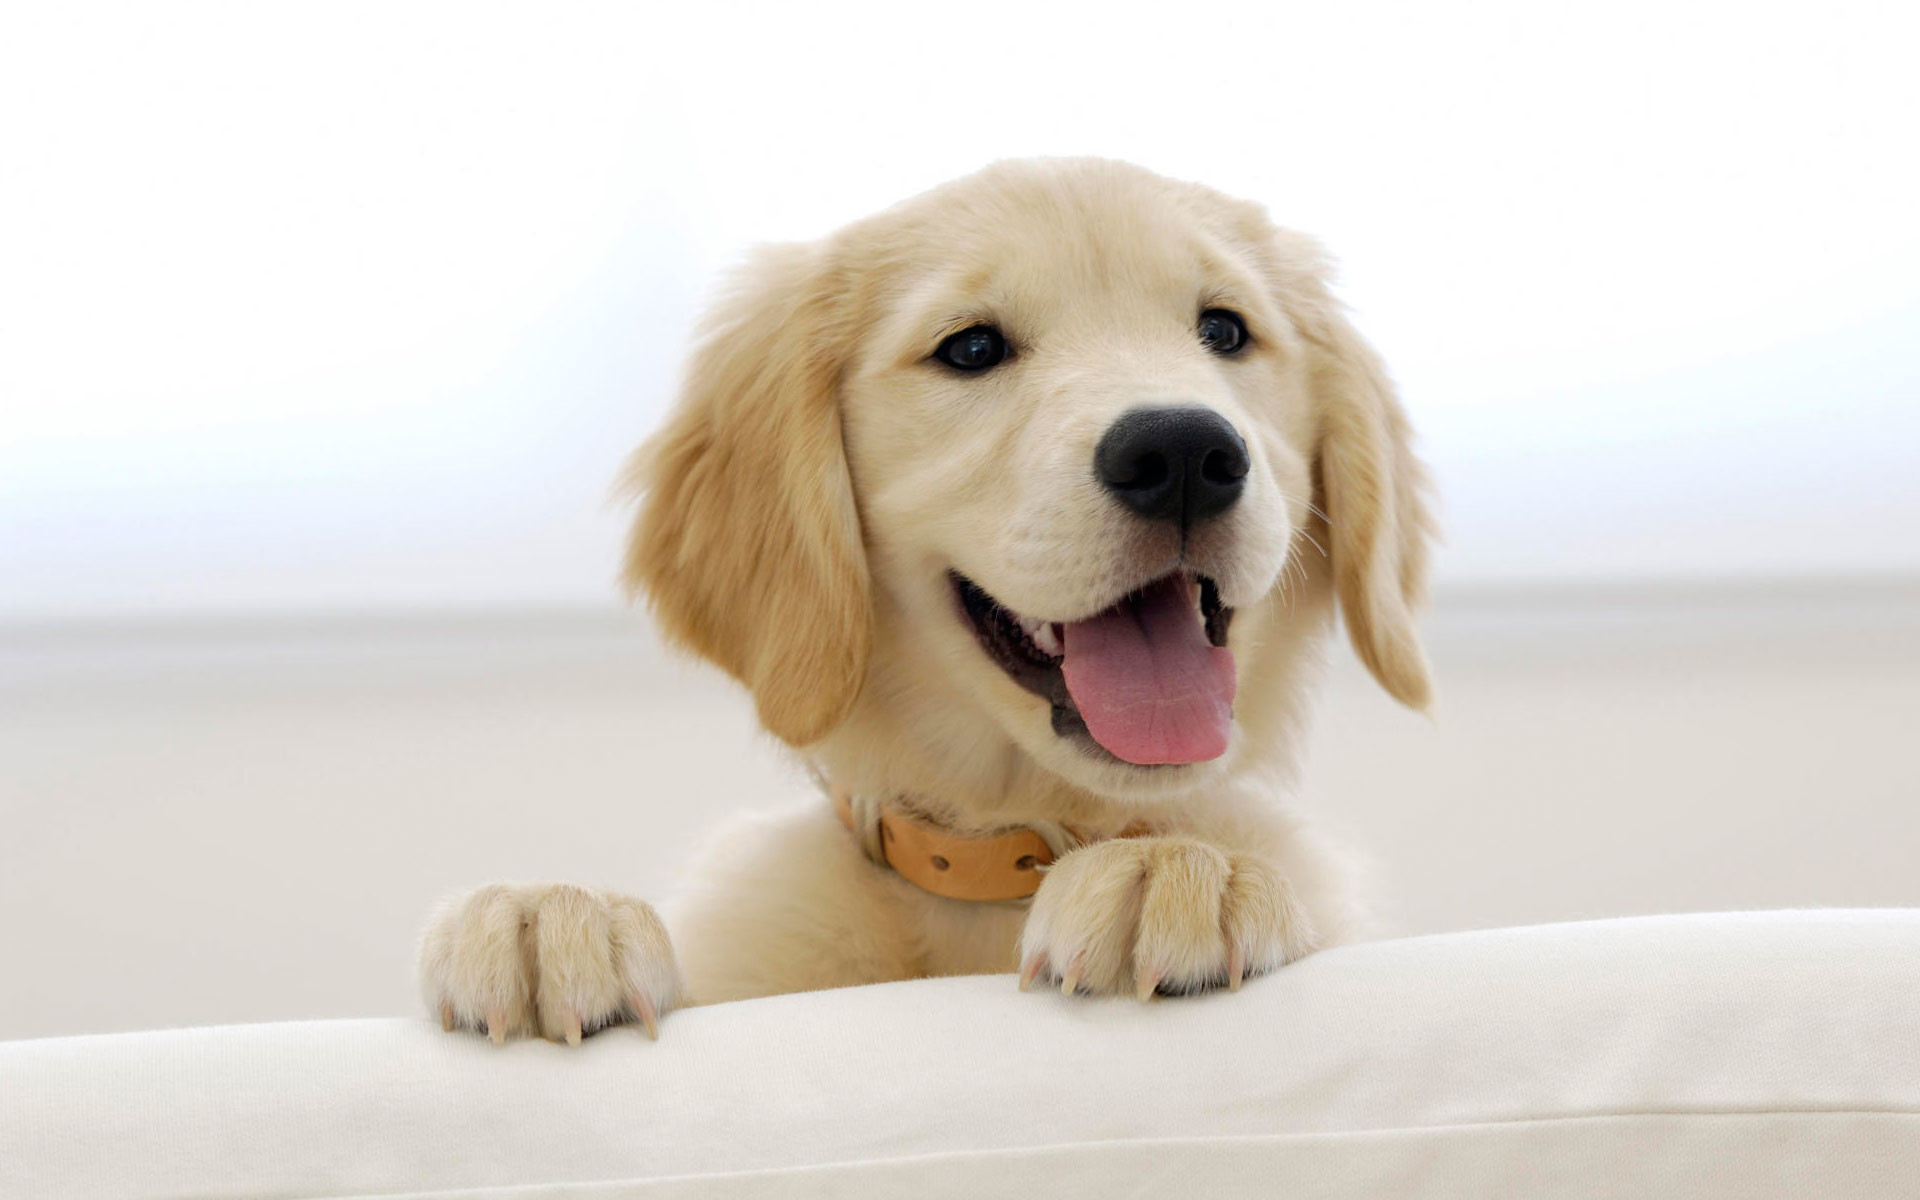 Cute Golden Retriever Puppies Wallpaper Image